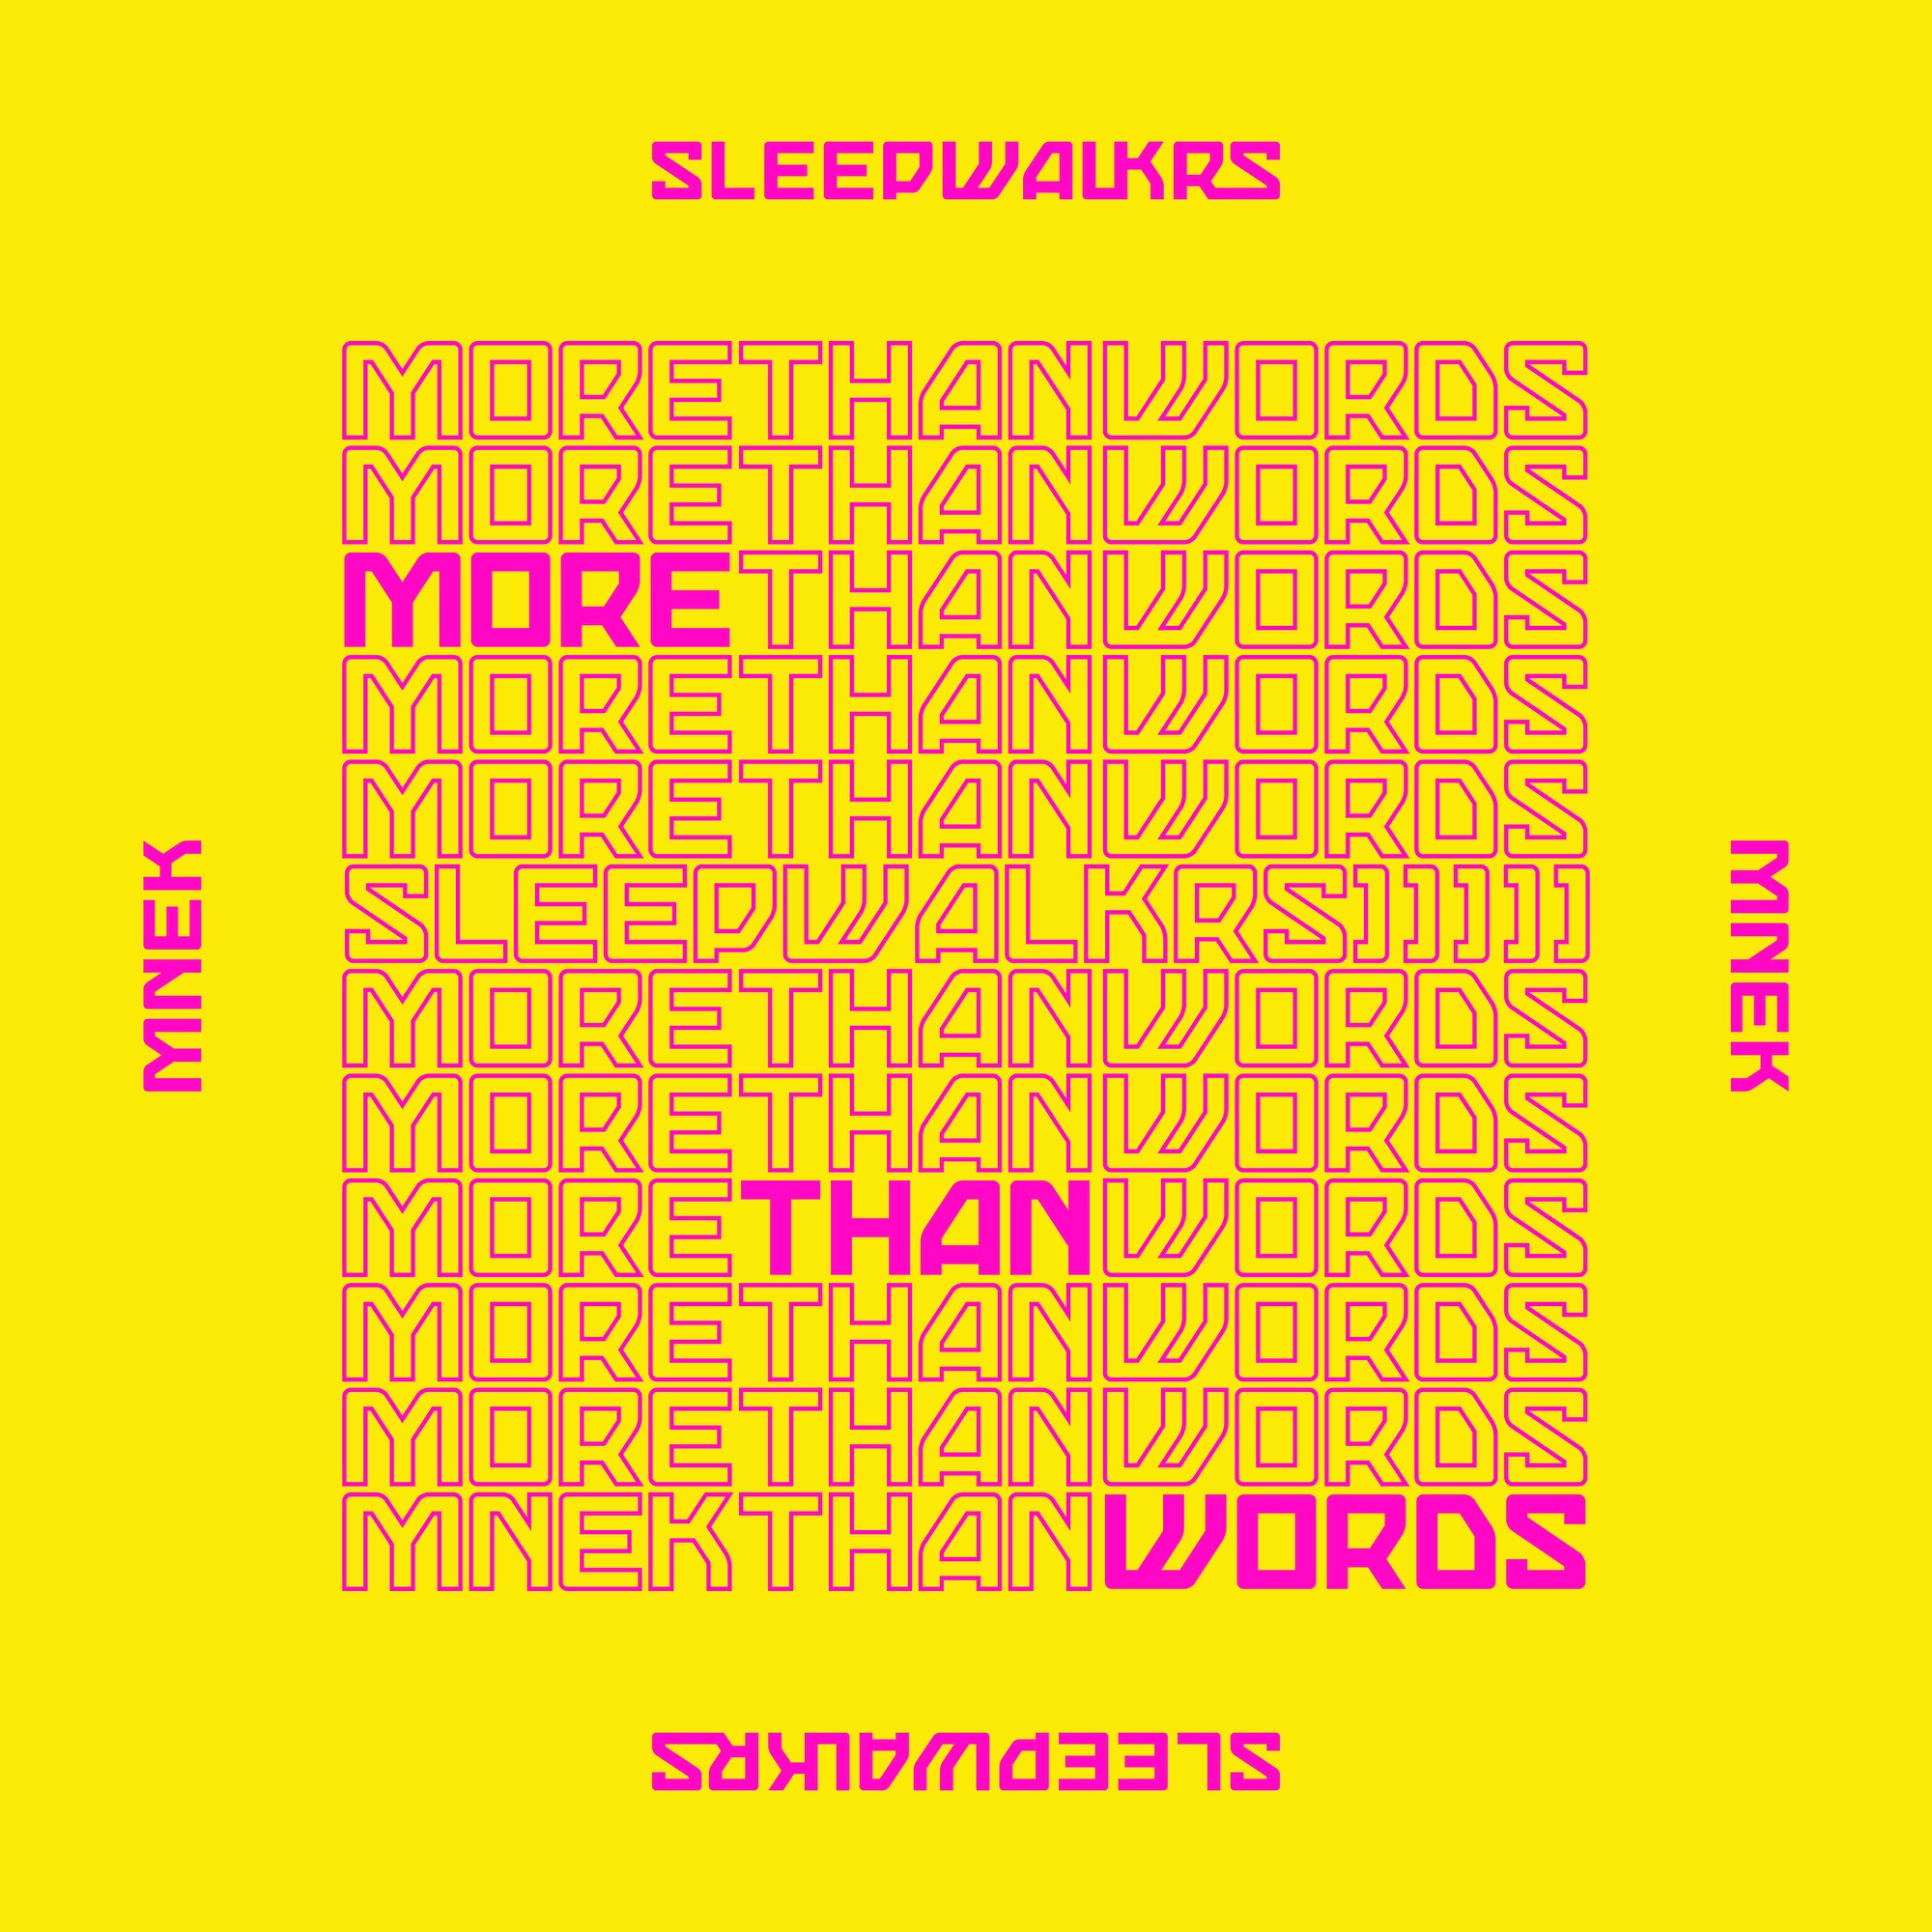 SLEEPWALKRS - More Than Words (feat. MNEK) - Single